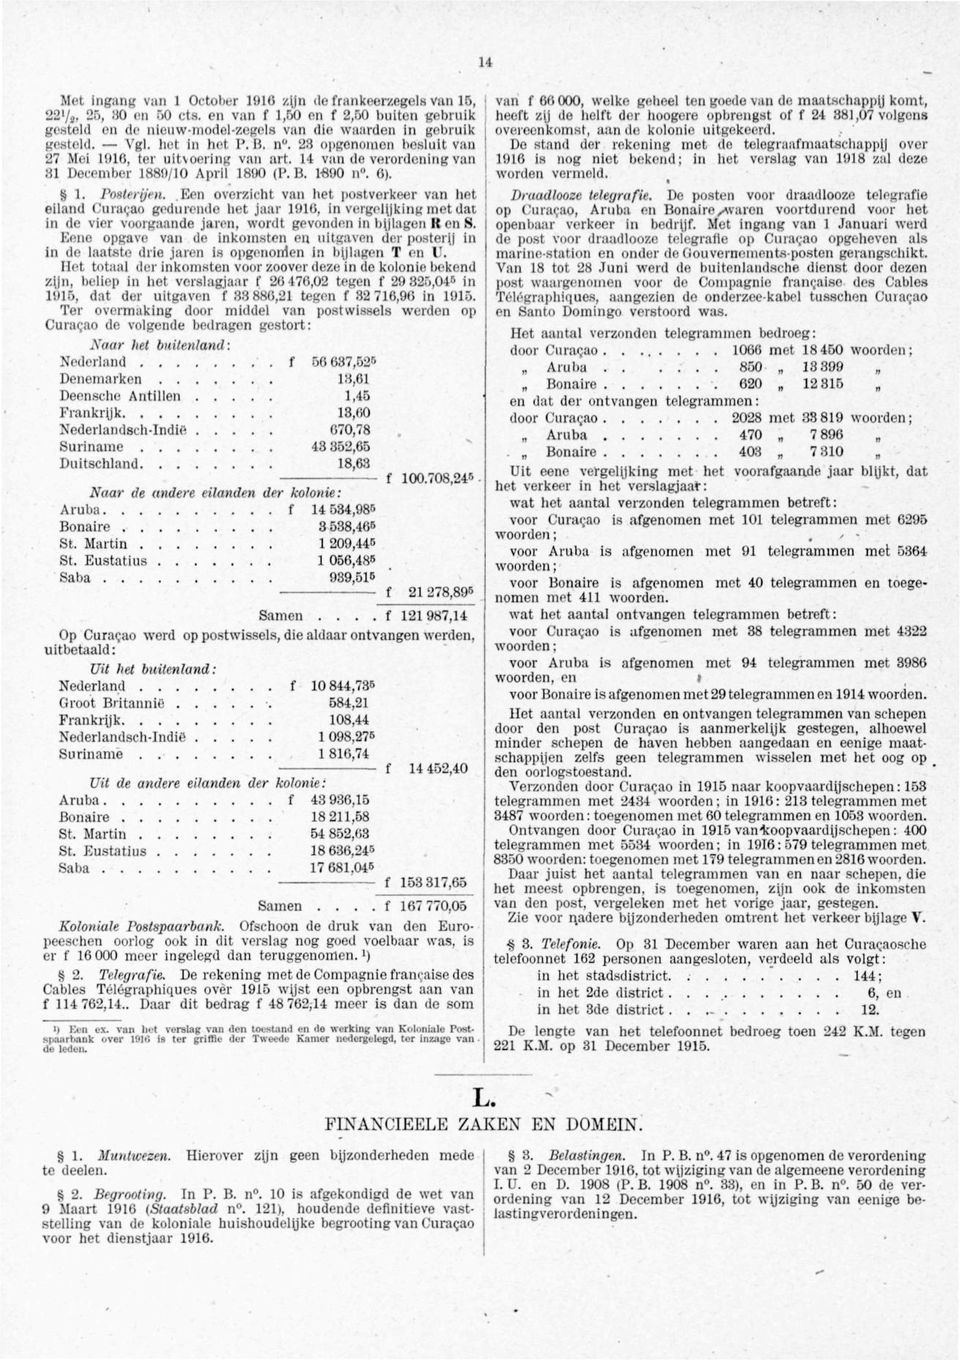 Een overzicht van het postverkeer van het eiland Curacao gedurende het jaar 1916, in vergelijking met dat in de vier voorgaande jaren, wordt gevonden in bijlagen R en S.